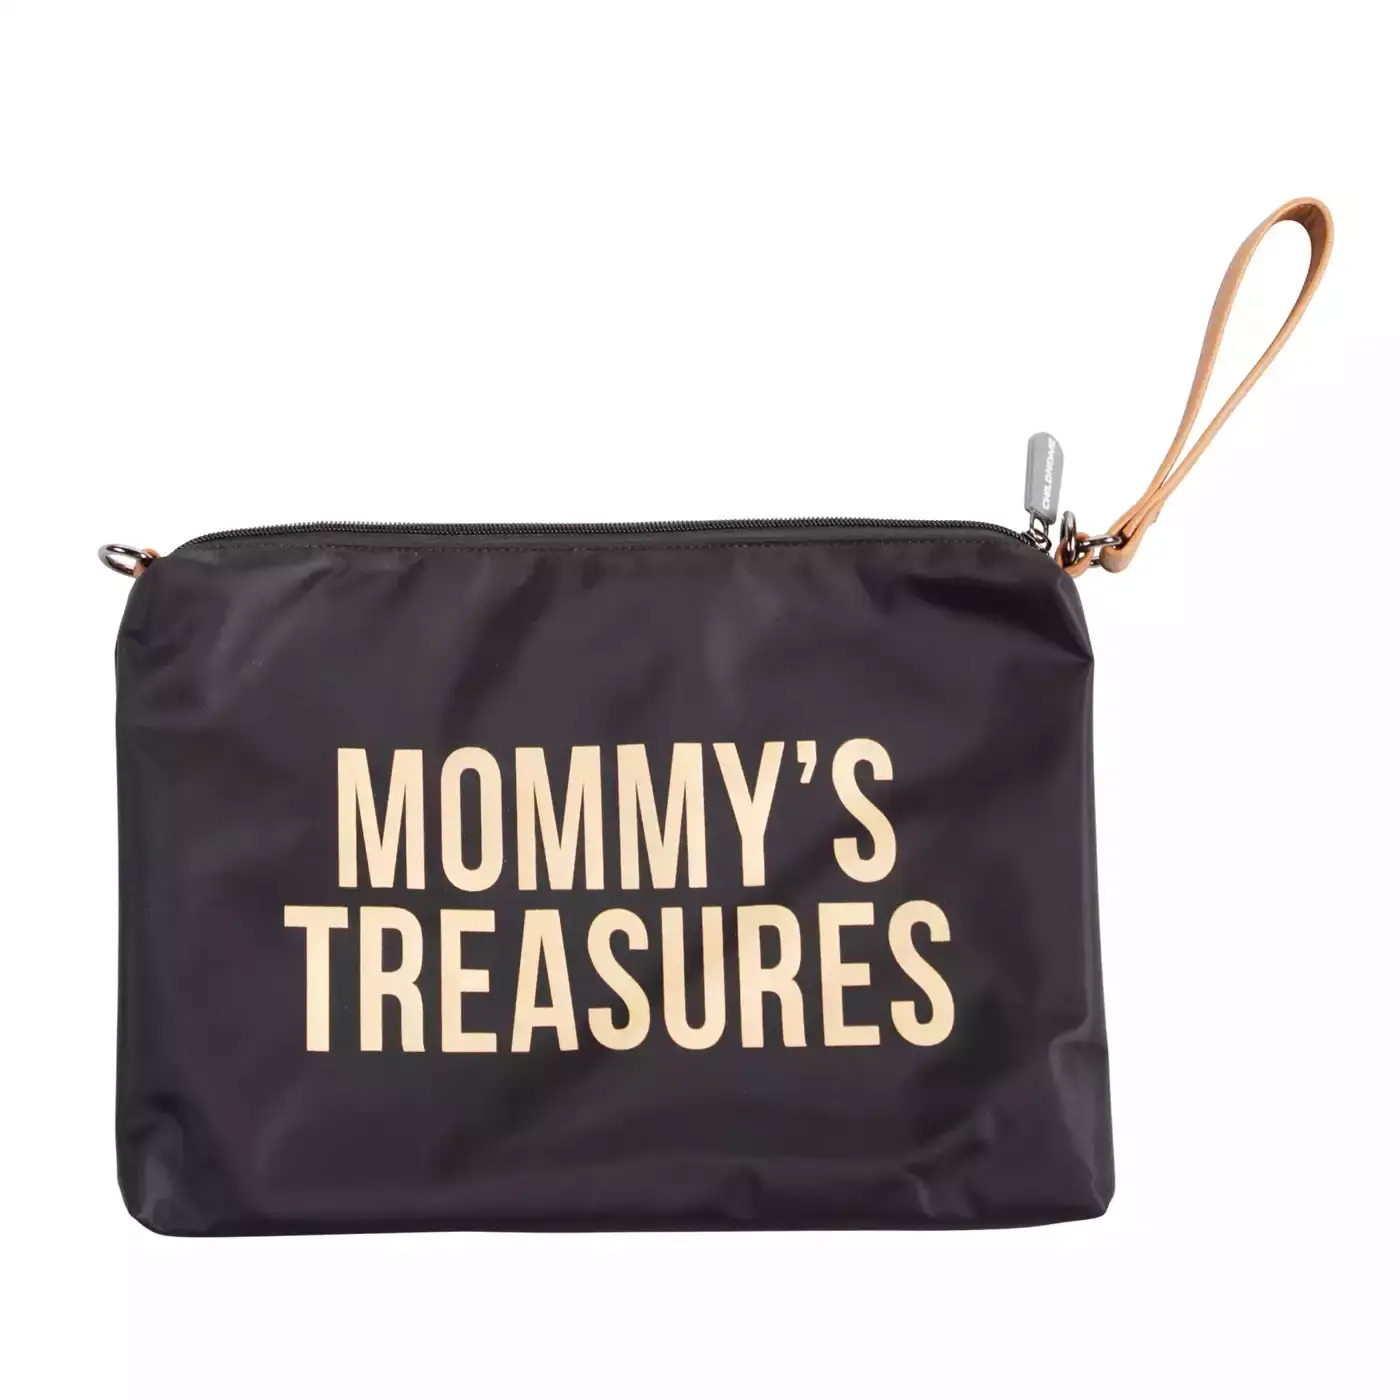 Mommy's Treasures Clutch CHILDHOME Schwarz Gelb Gold 2000580656169 1